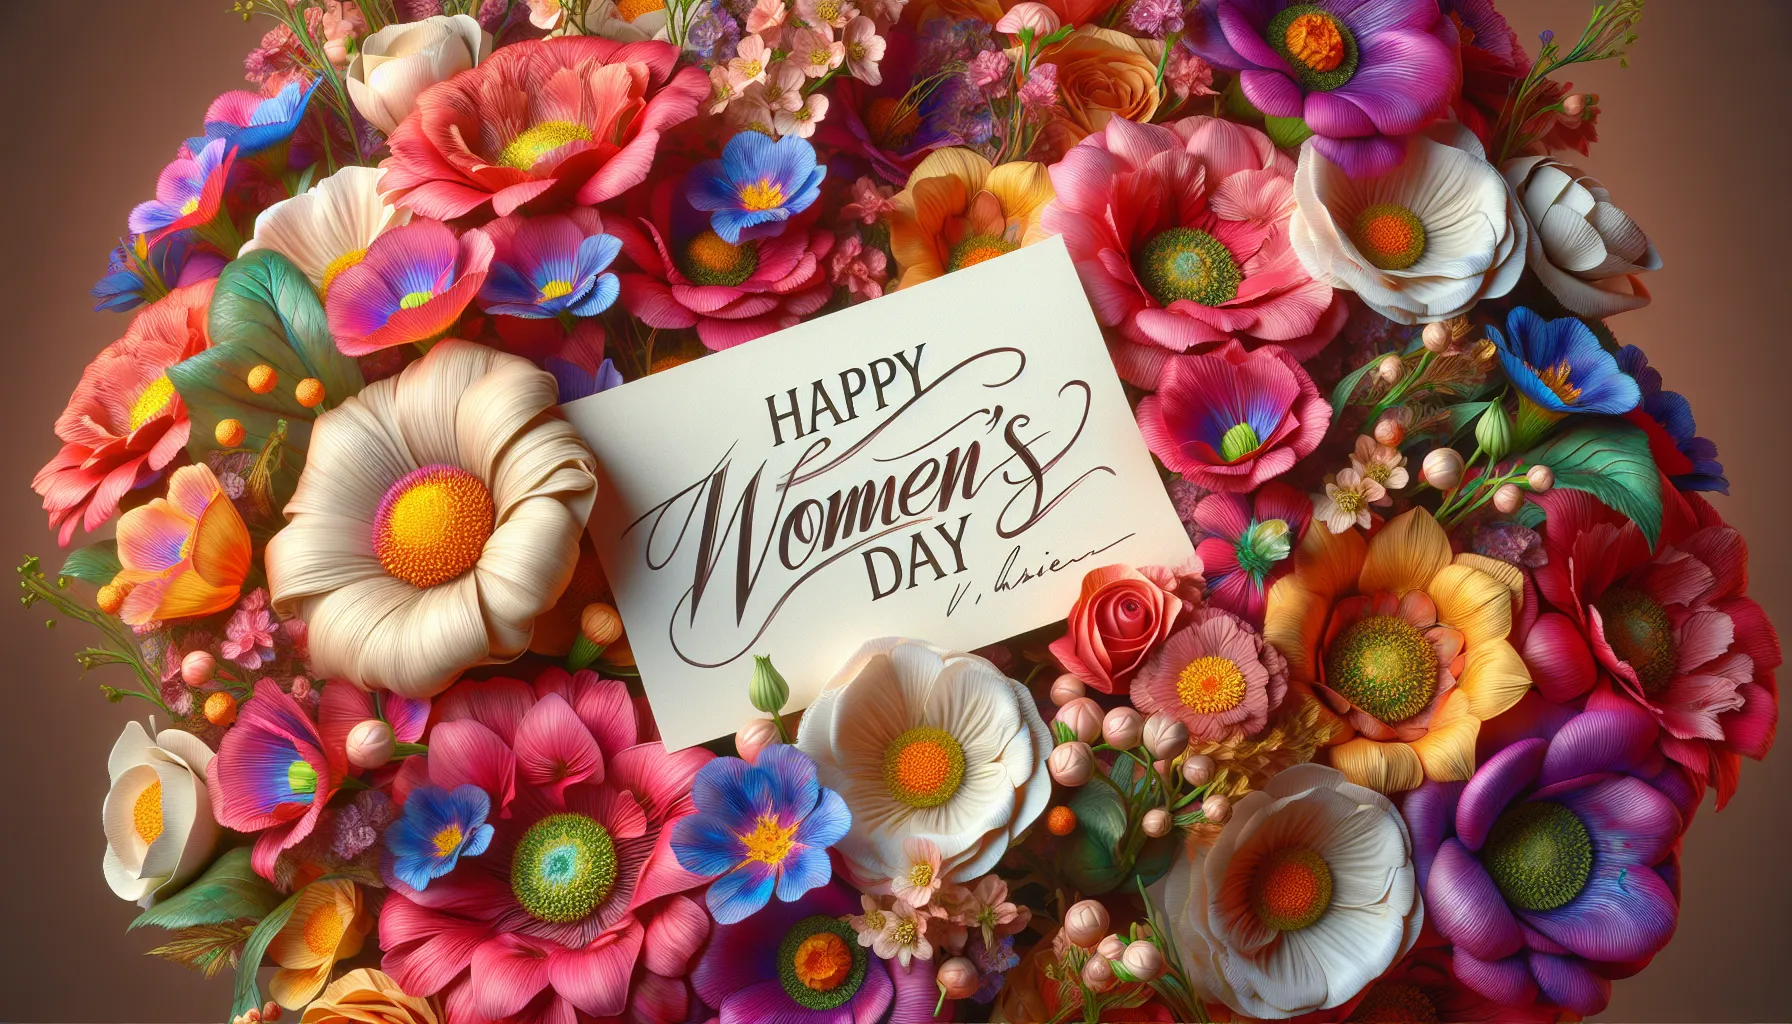 No Dia das Mulheres, é comum presentear as mulheres com uma lembrança especial.